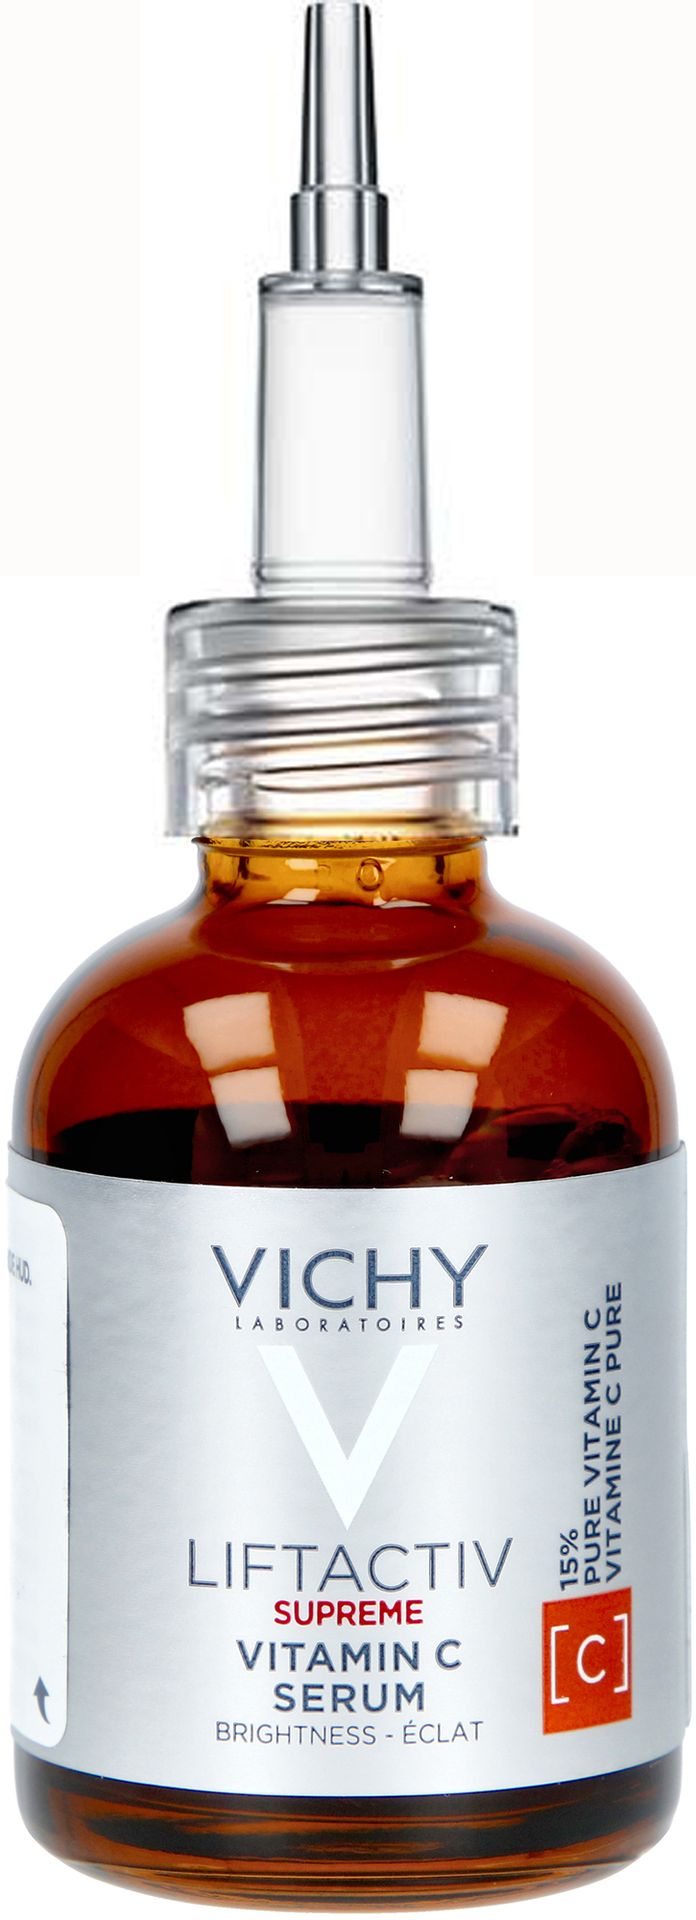 Vichy Vichy Liftactiv Supreme Vitamin C - serum rozświetlające z 15% czystej witaminy C 20ml